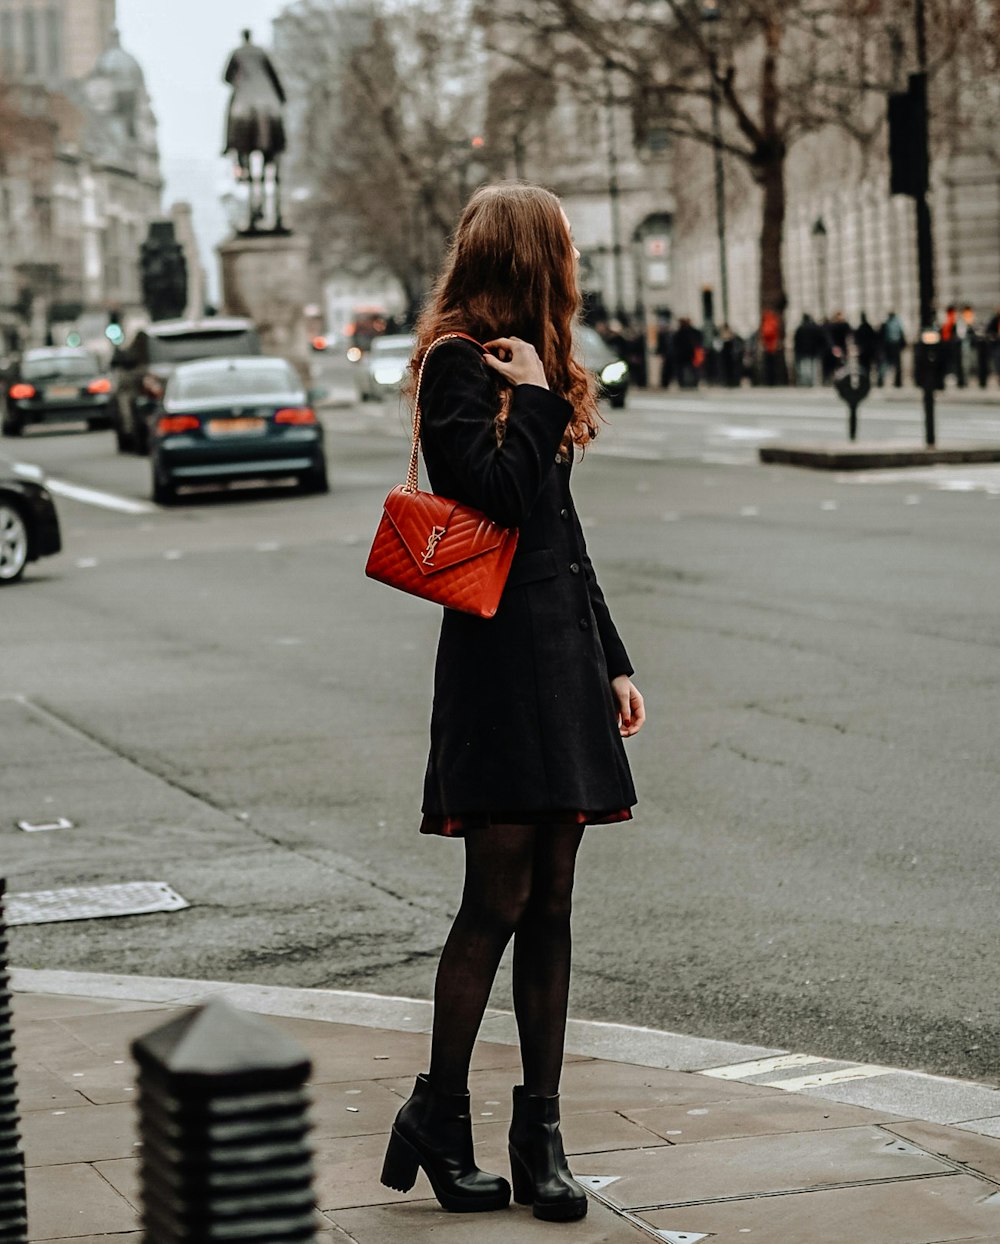 Frau in schwarzem Mantel und roter Ledertasche tagsüber auf dem Bürgersteig